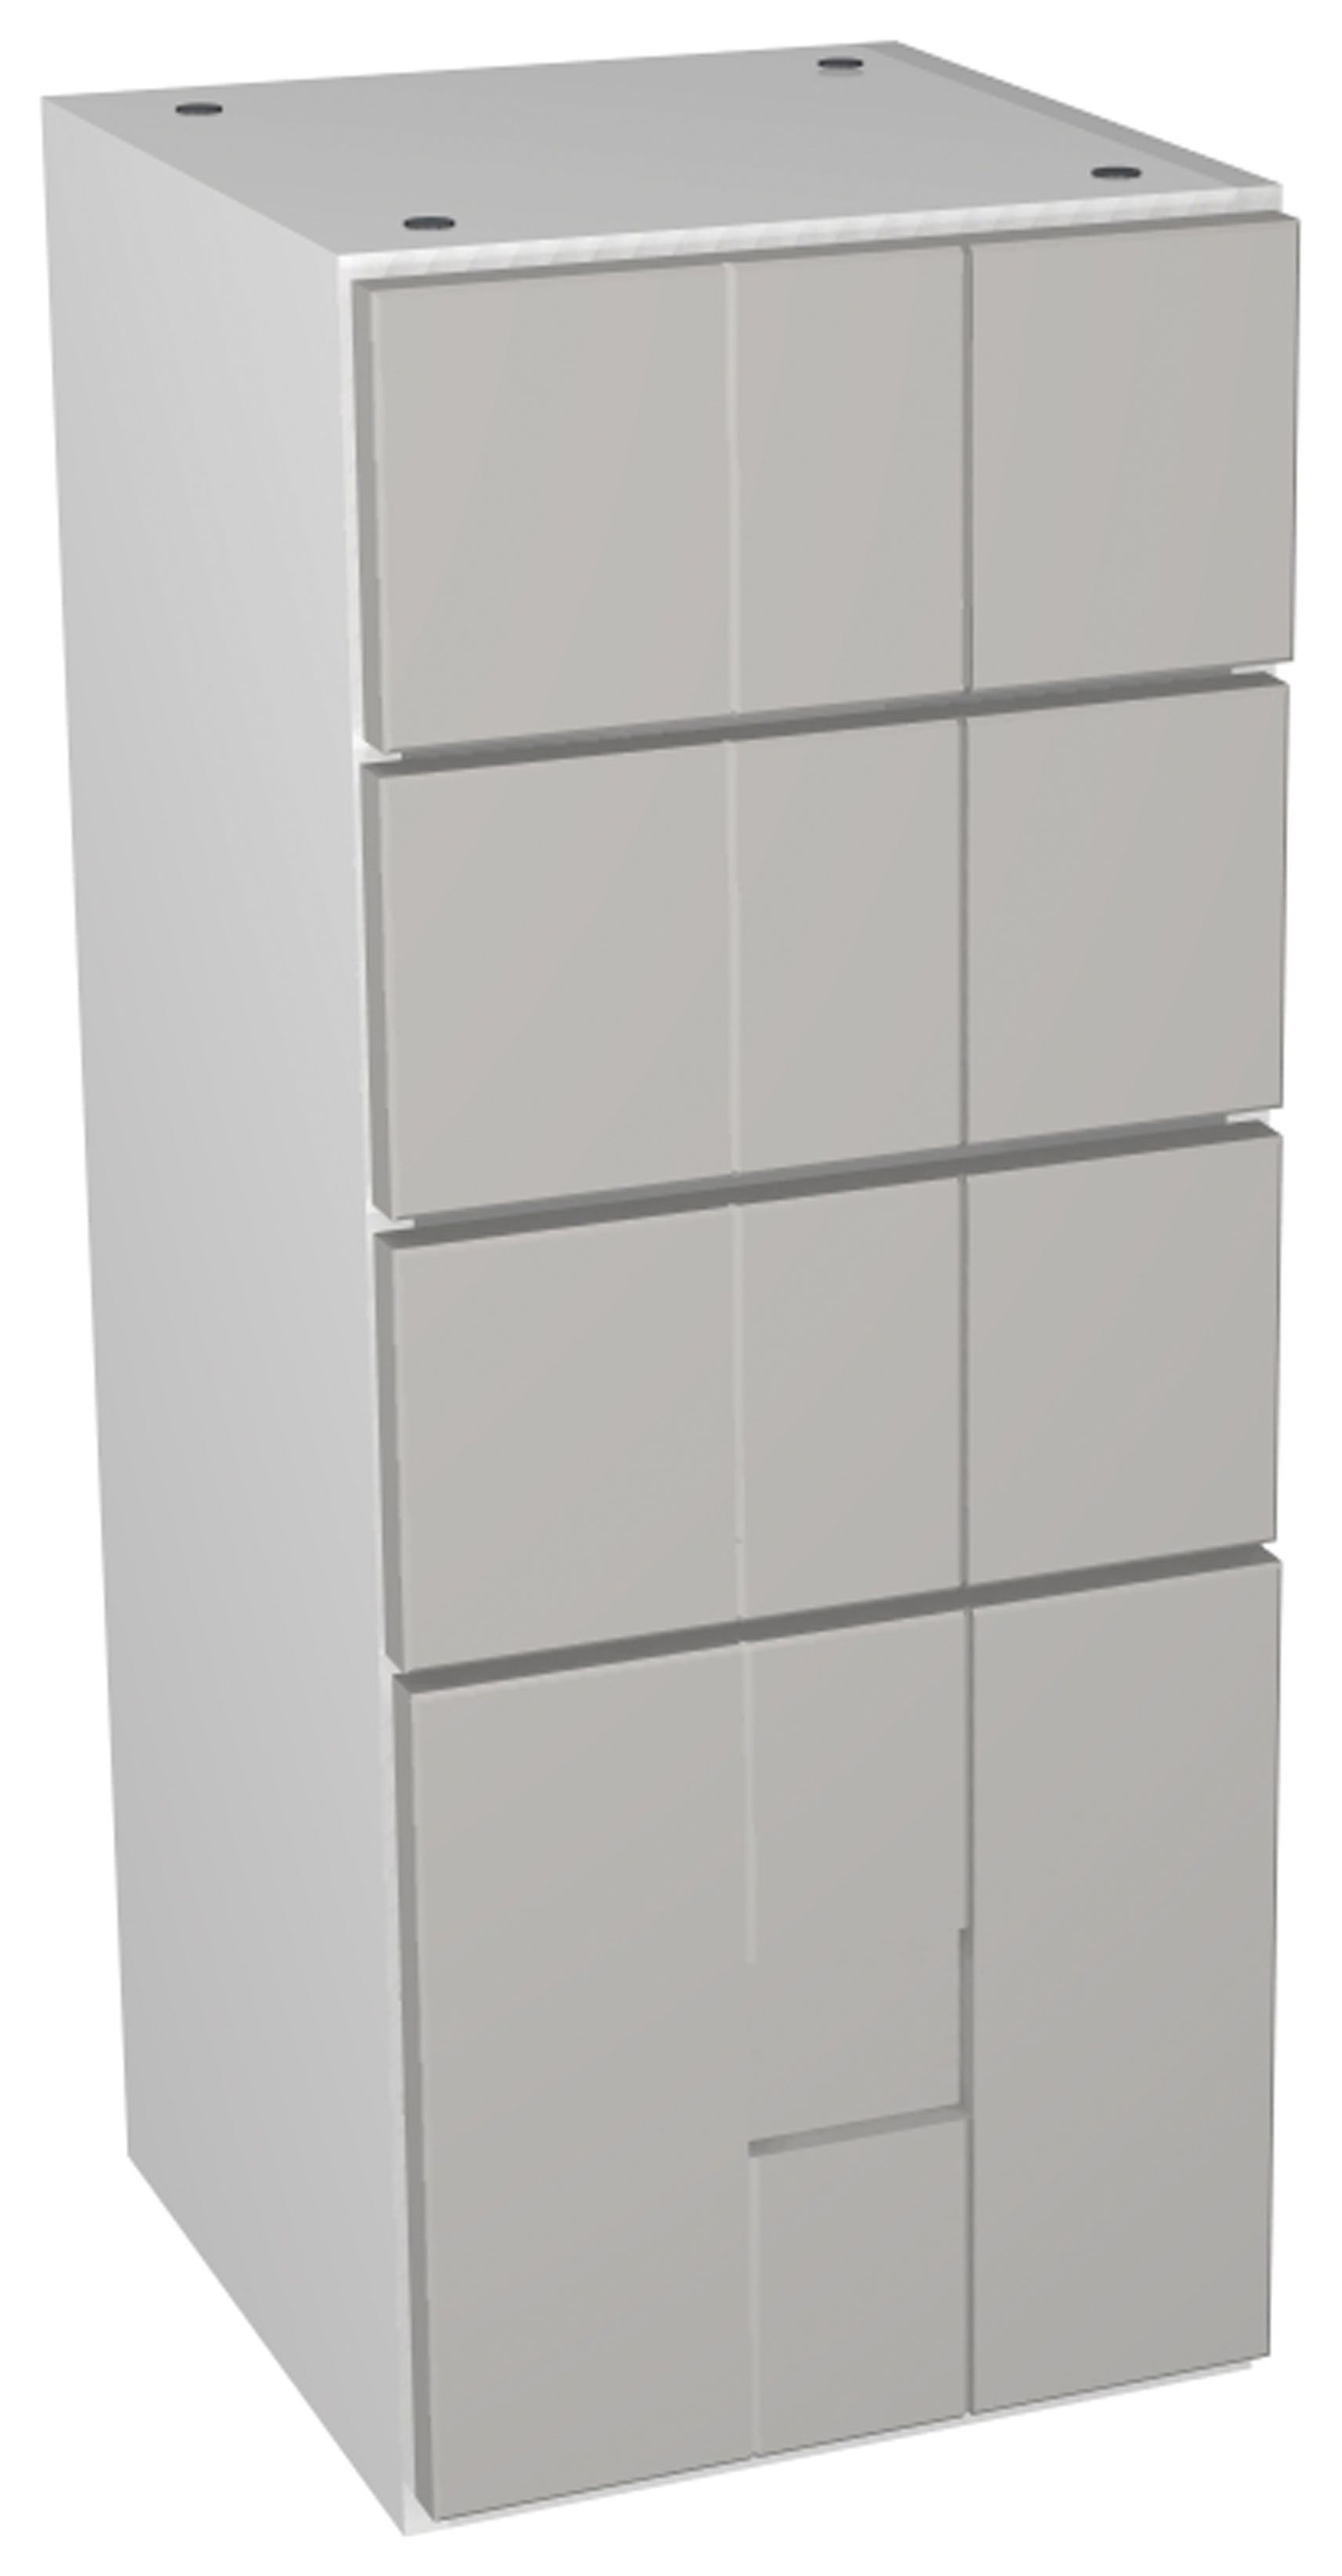 Wickes Vermont Grey 4 Drawer Storage Unit - 300 x 735mm